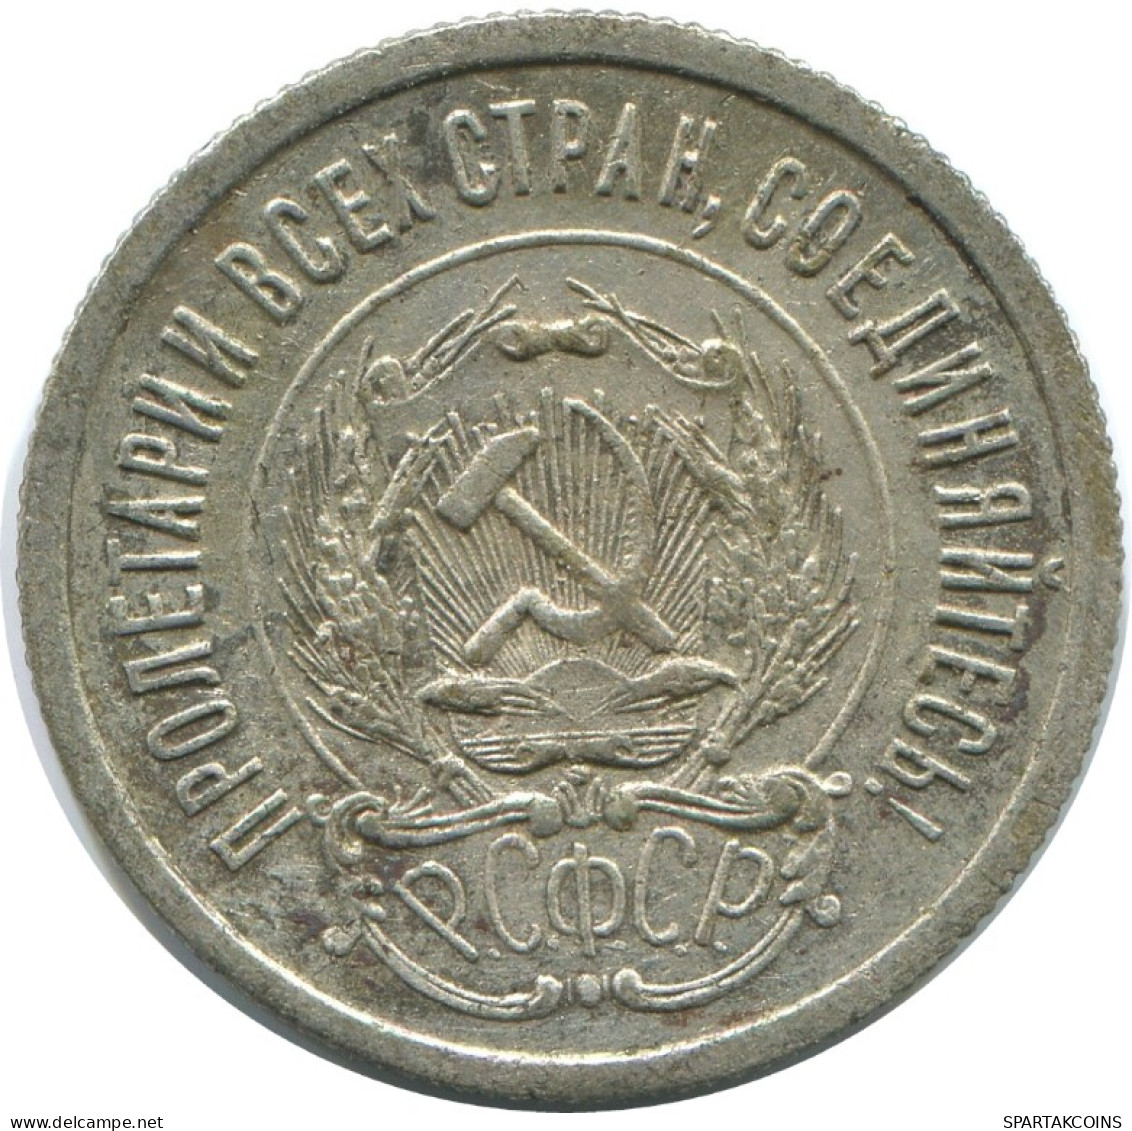 20 KOPEKS 1923 RUSIA RUSSIA RSFSR PLATA Moneda HIGH GRADE #AF448.4.E.A - Russland